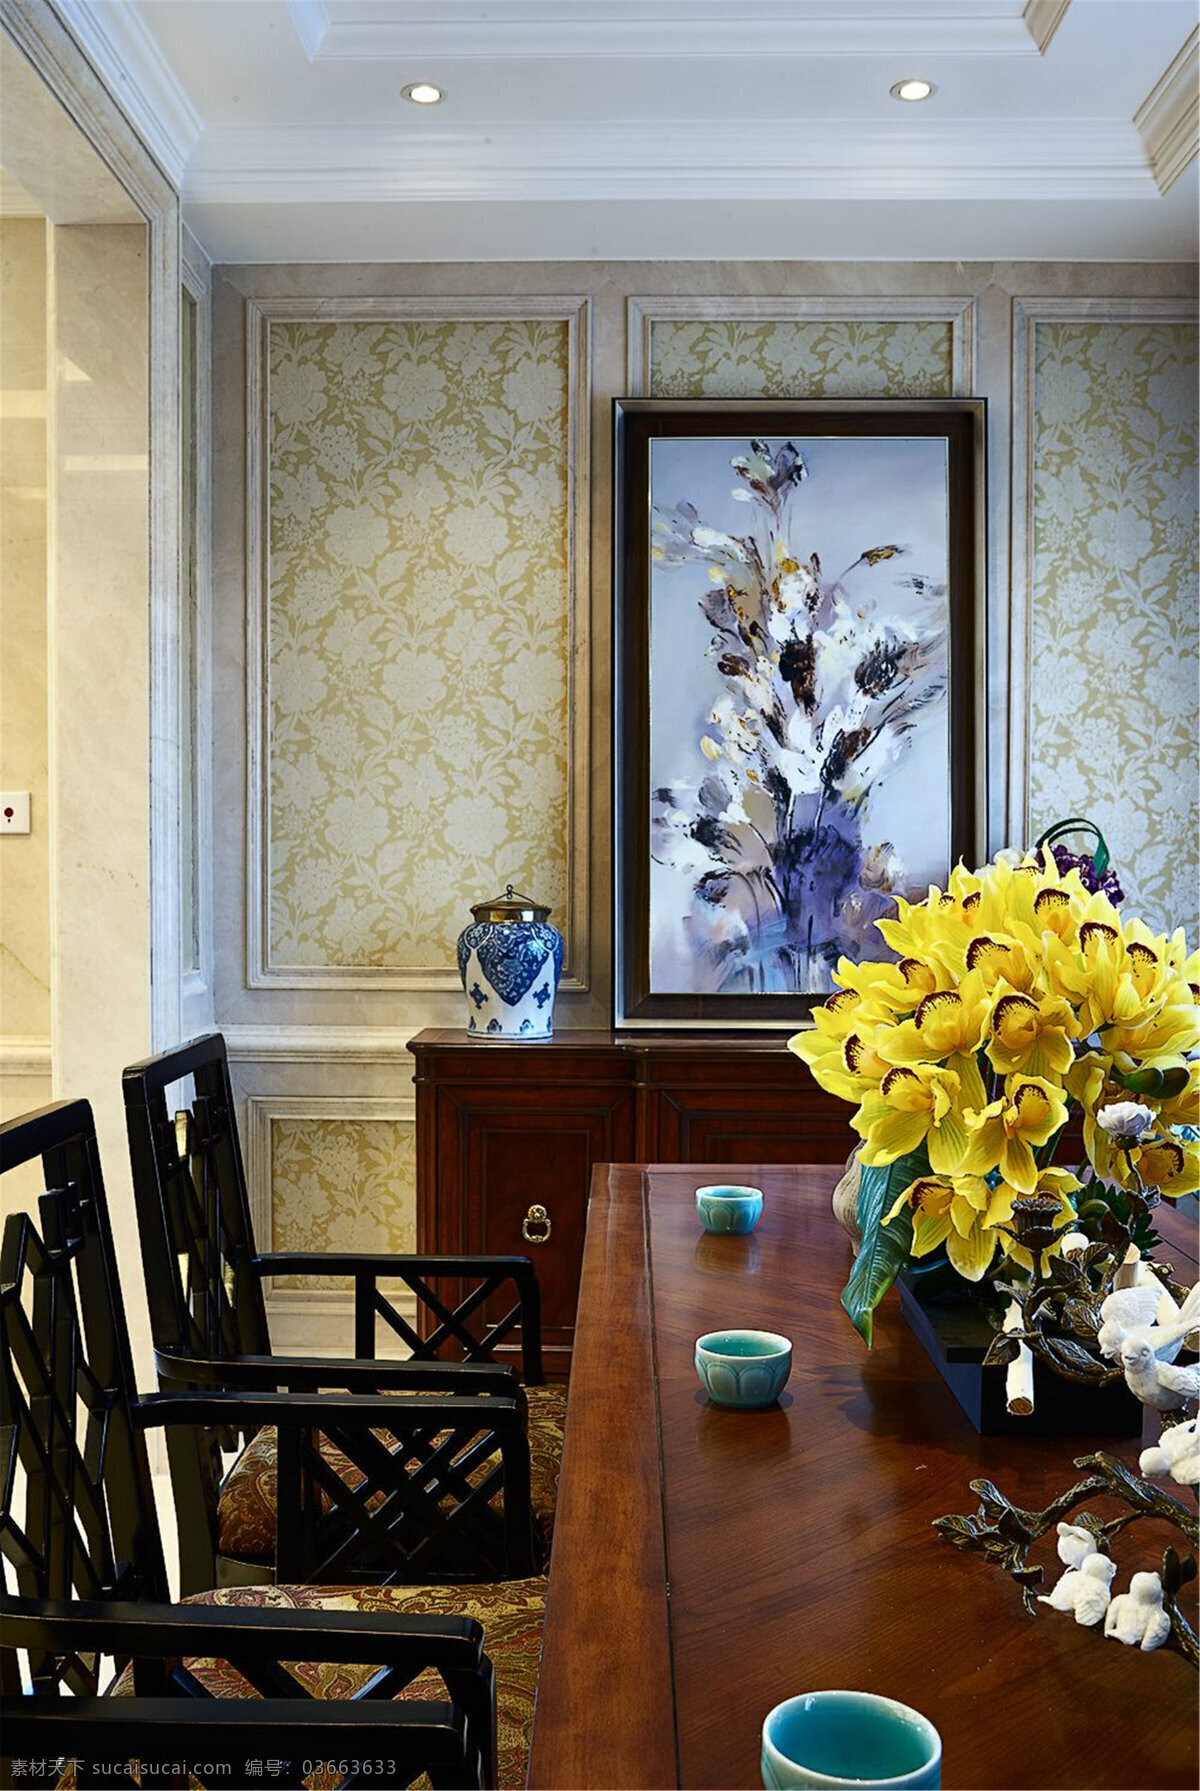 美式 时尚 茶桌 家装 效果图 家居 家具 家具设计 空间设计 室内设计 室内装修 装修设计 风格 环境设计 壁画